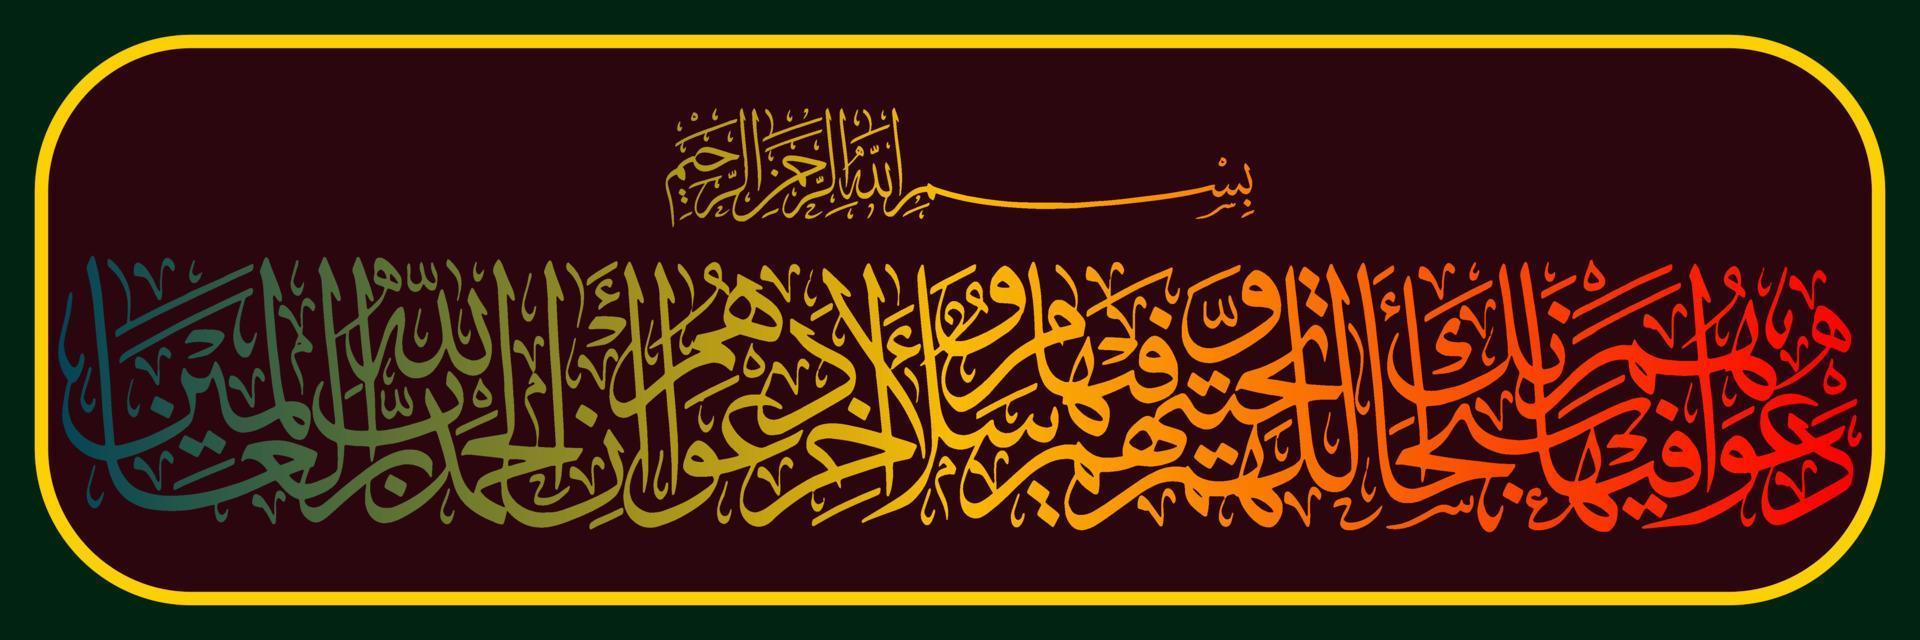 caligrafía árabe, corán sura en yunus verso 10, traducida su oración en ella es, bendito seas, oh nuestro señor, y su saludo es, la paz sea contigo. y el final de su oración es, vector